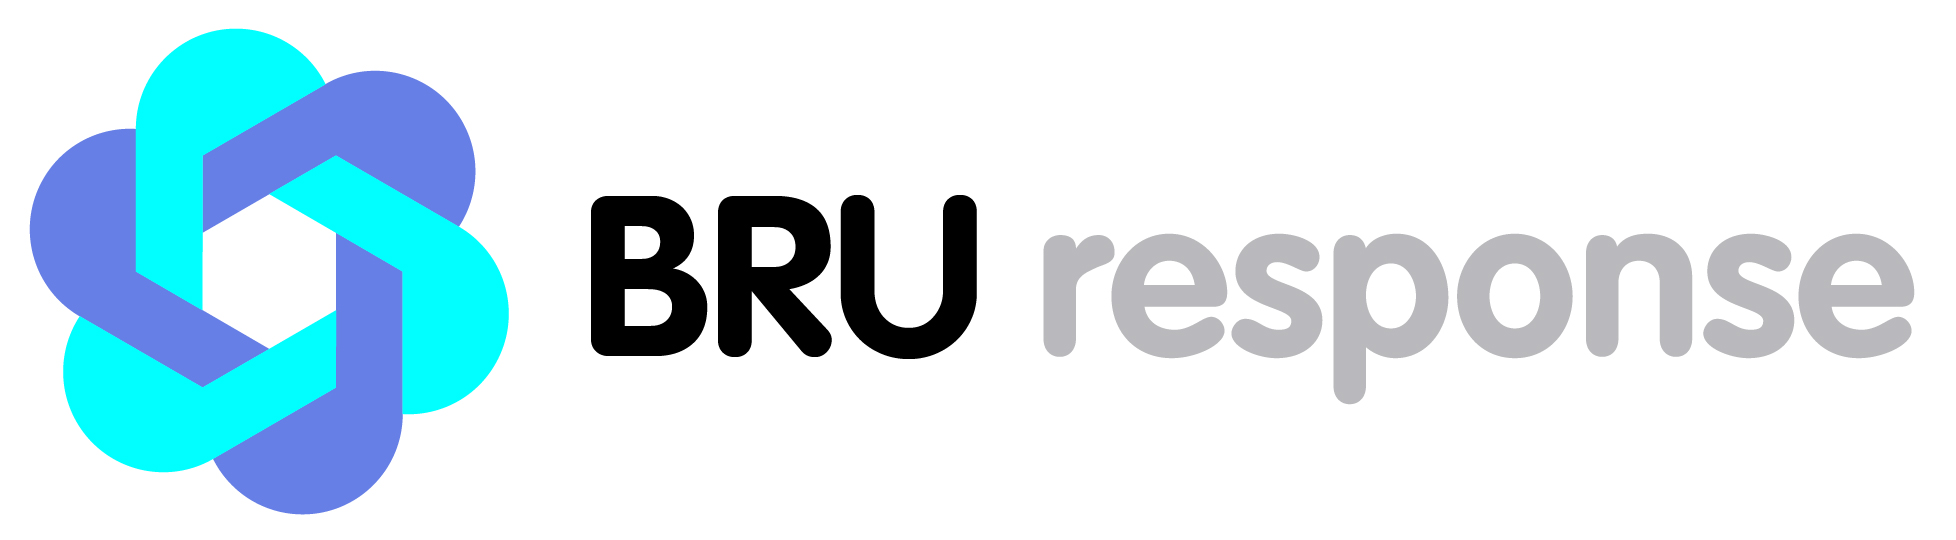 BRU response: een label voor de integratie van de Brusselaars in de crisisbeheersing